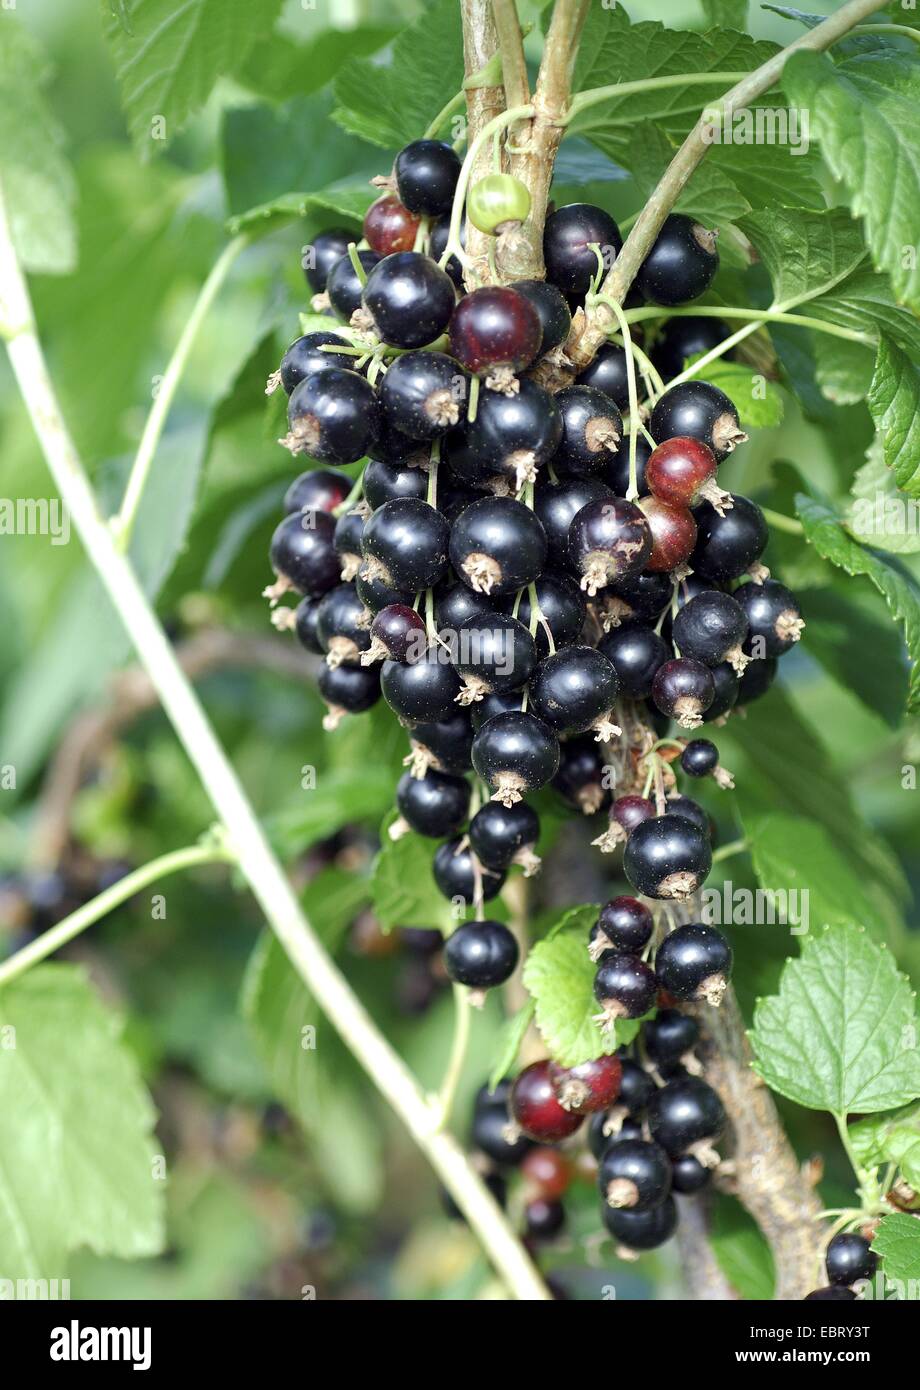 European black currant (Ribes nigrum 'Titania', Ribes nigrum Titania), cultivar Titania Stock Photo